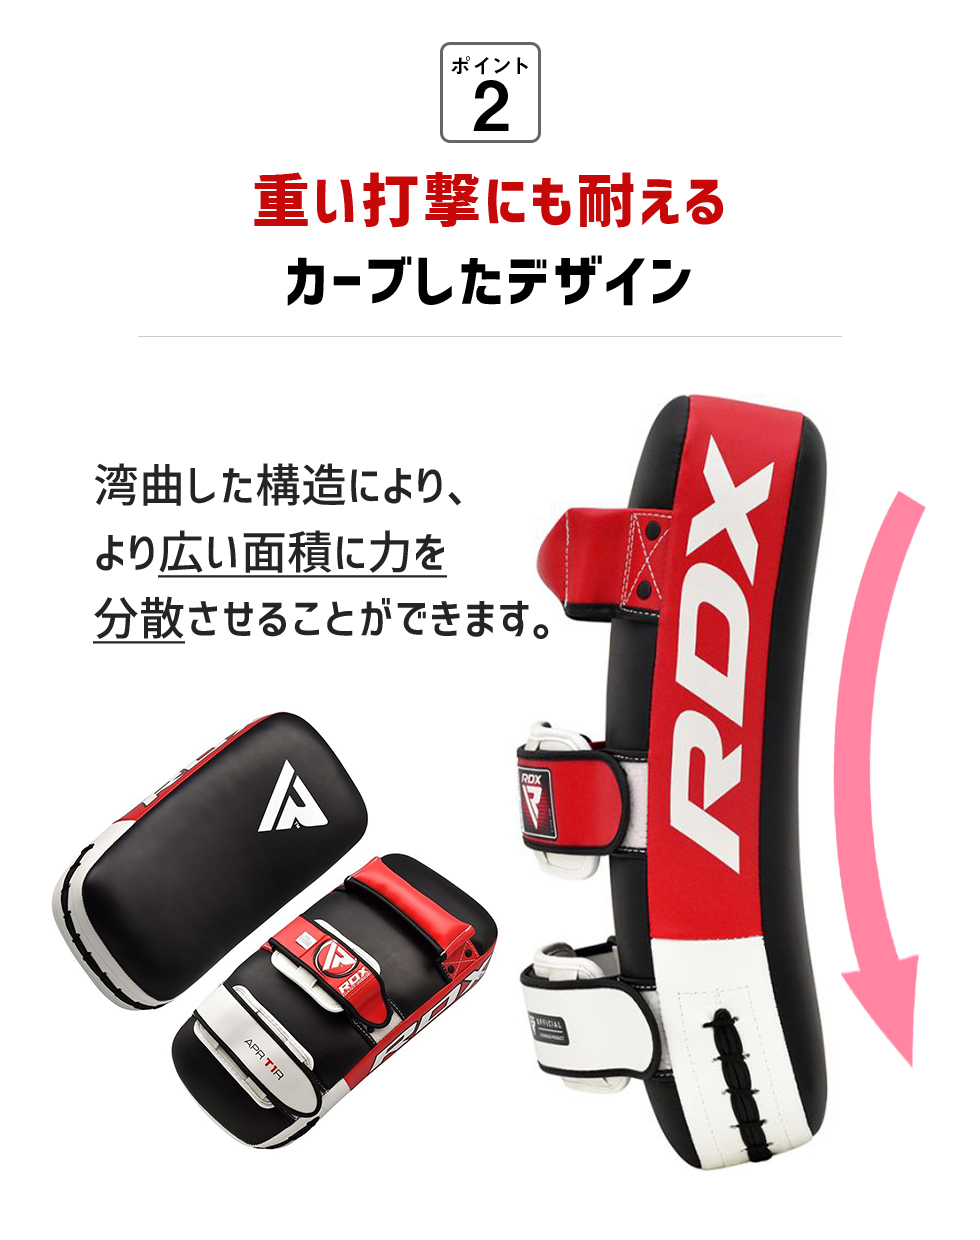 キックミット 2個入り RDX 公式 キックボクシング 総合格闘技 MMA 